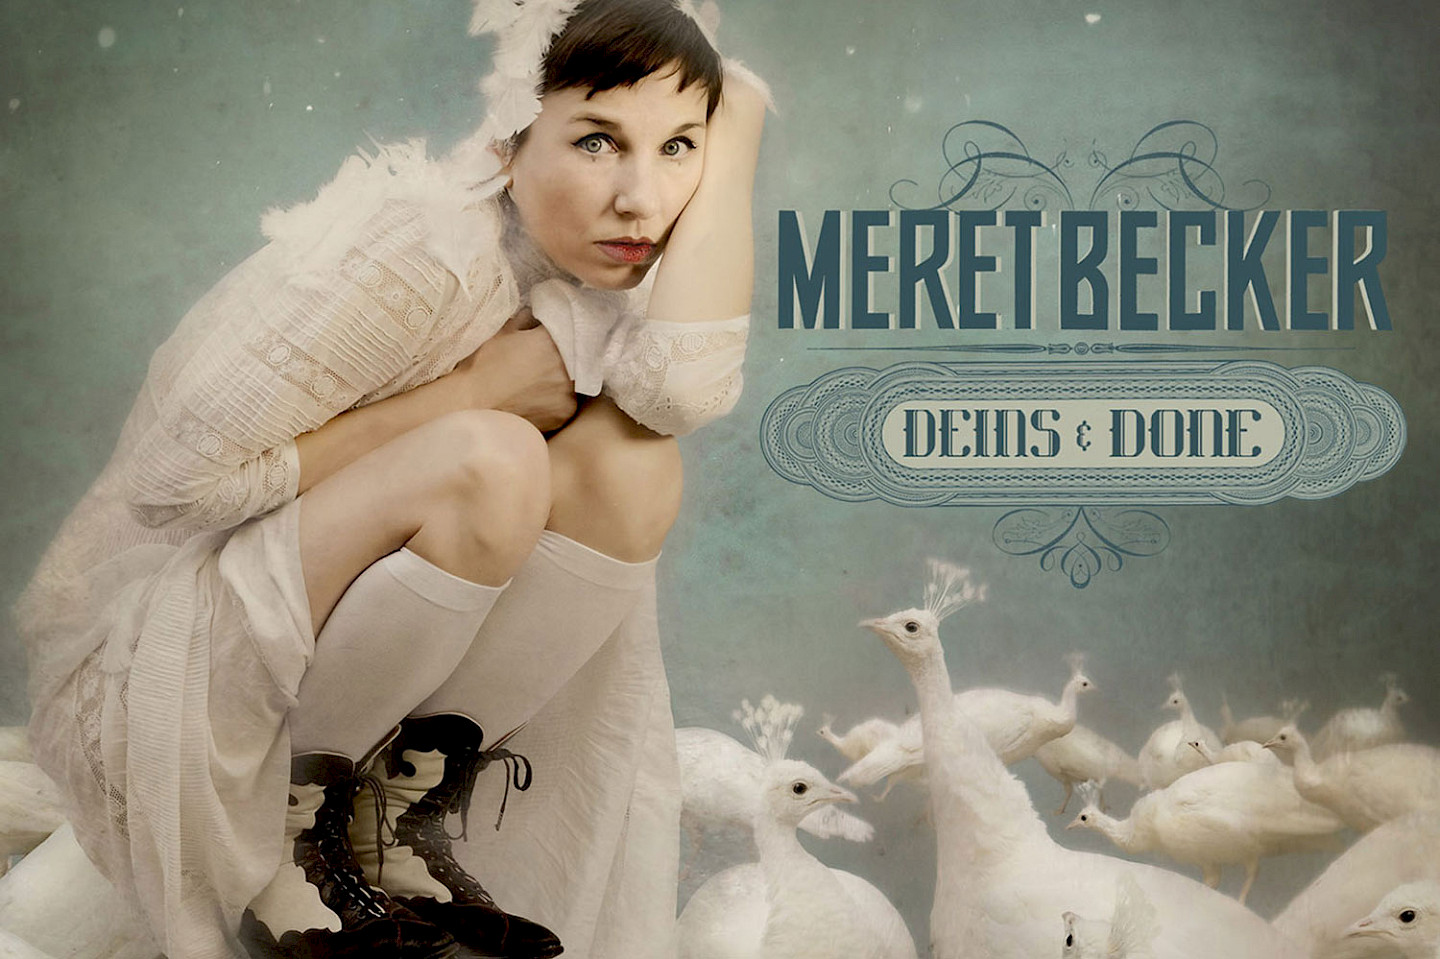 Meret Becker & Band